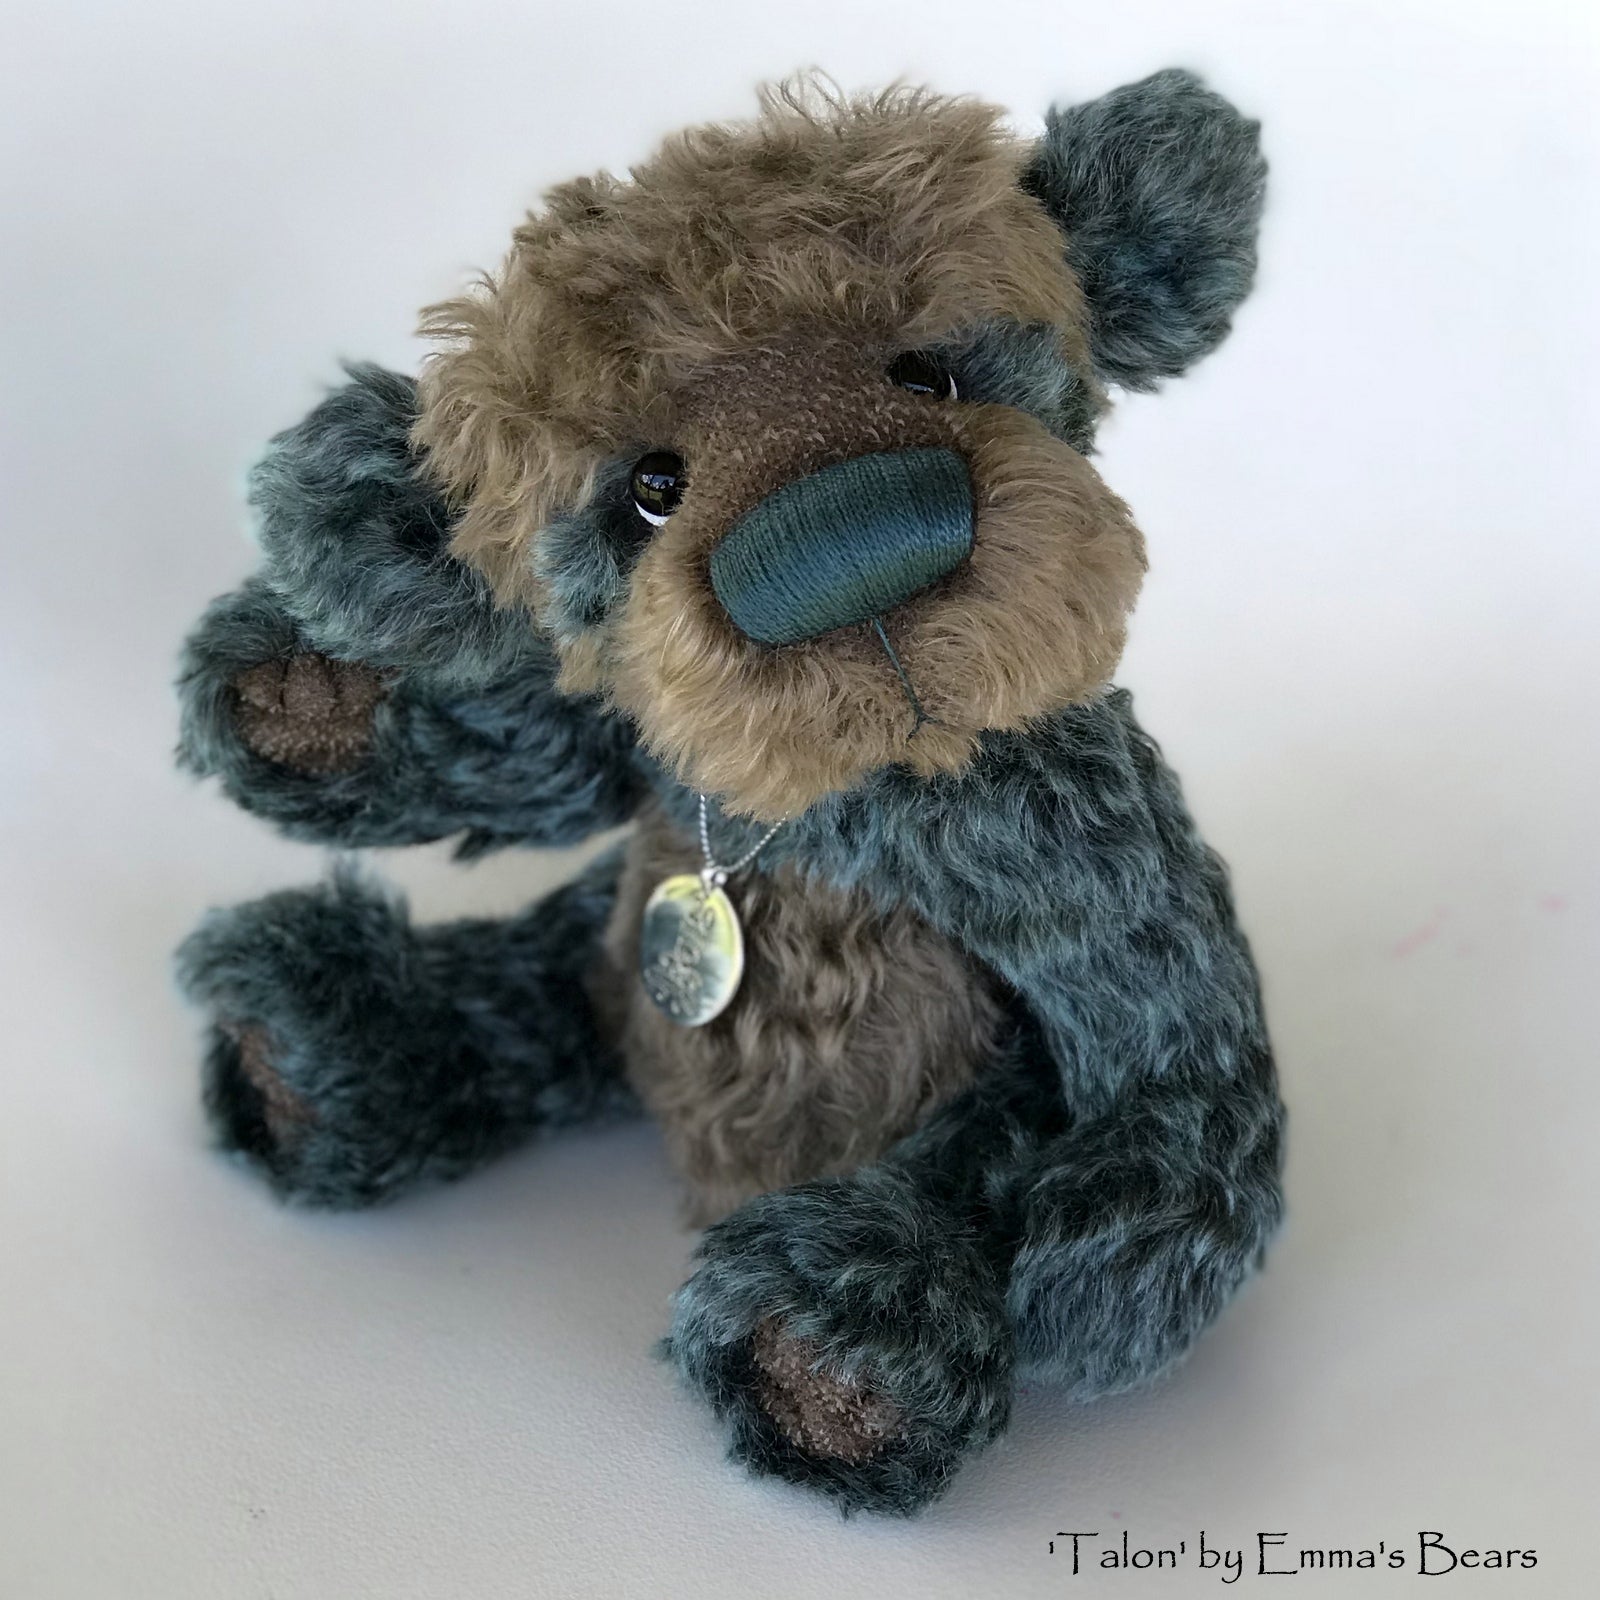 Talon - 20 Years of Emma's Bears Commemorative Teddy - OOAK in a series